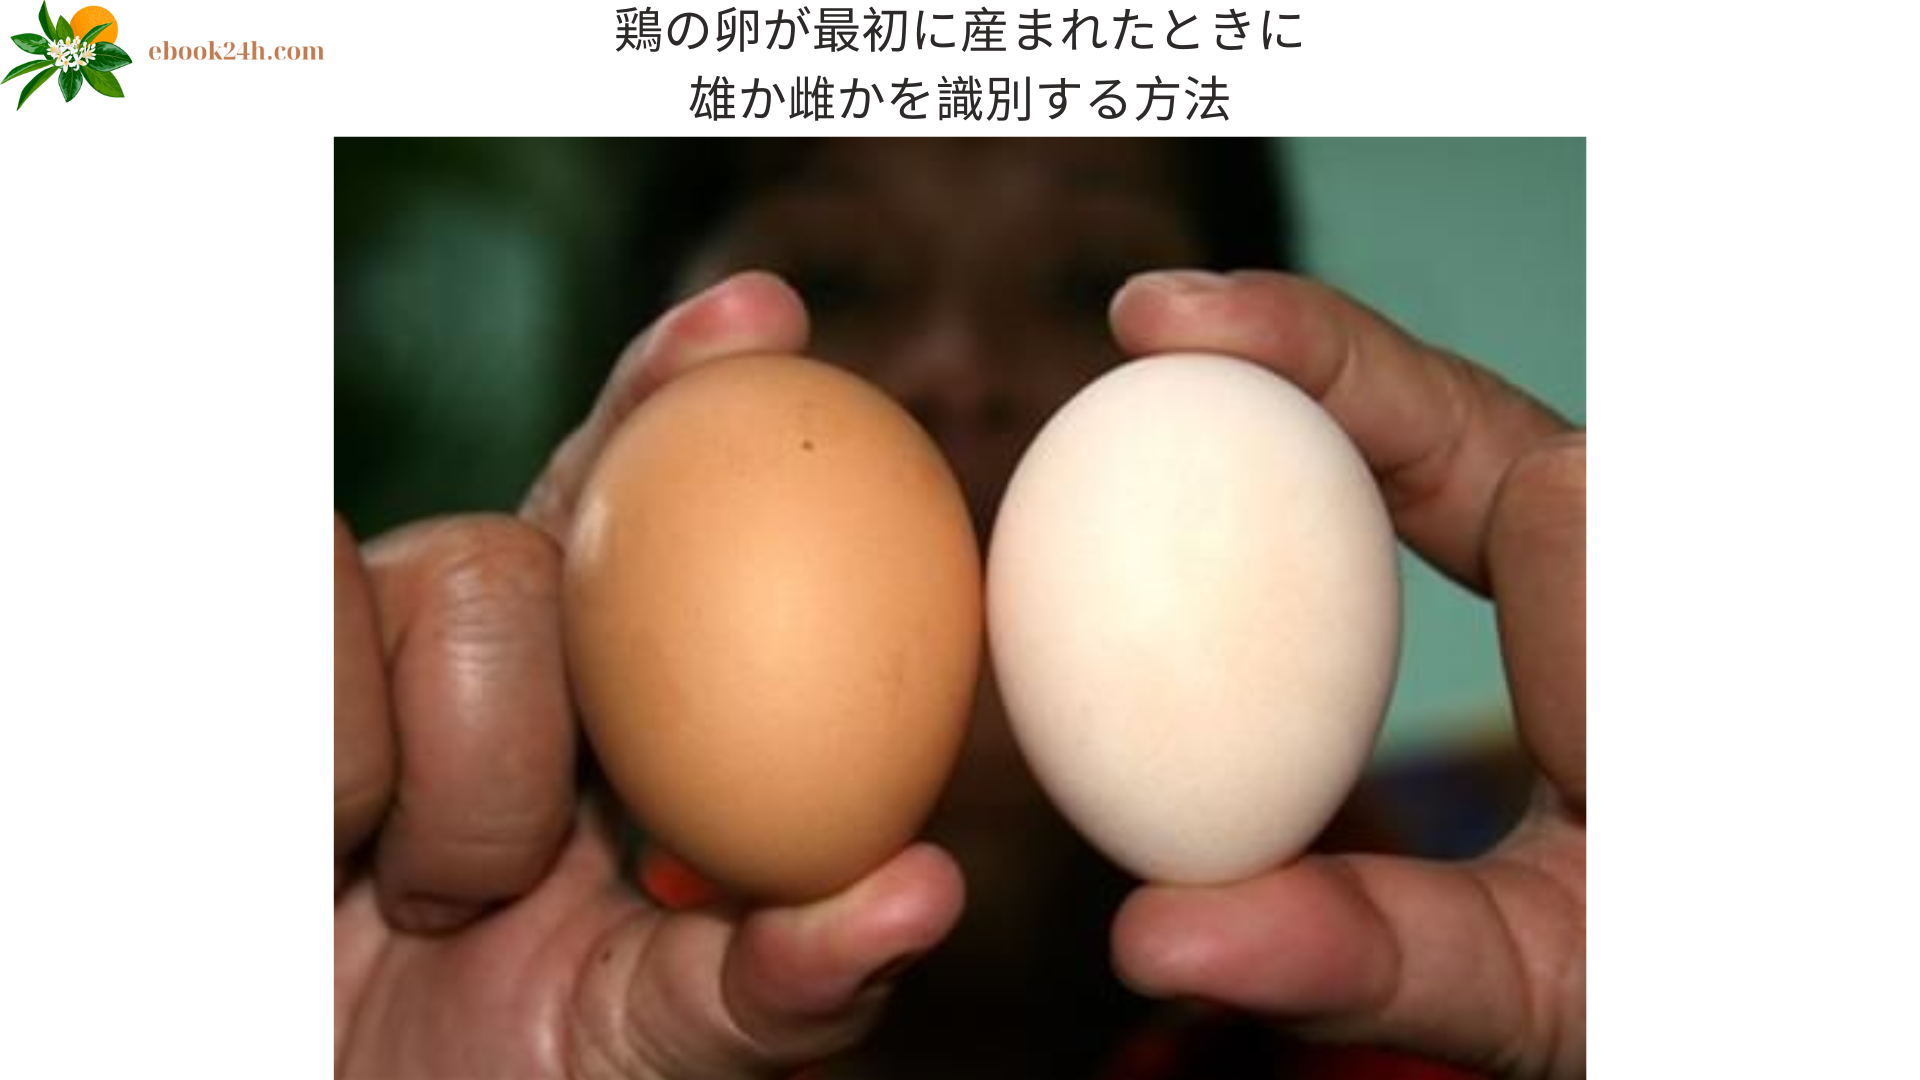 鶏の卵が最初に産まれたときに雄か雌かを識別する方法